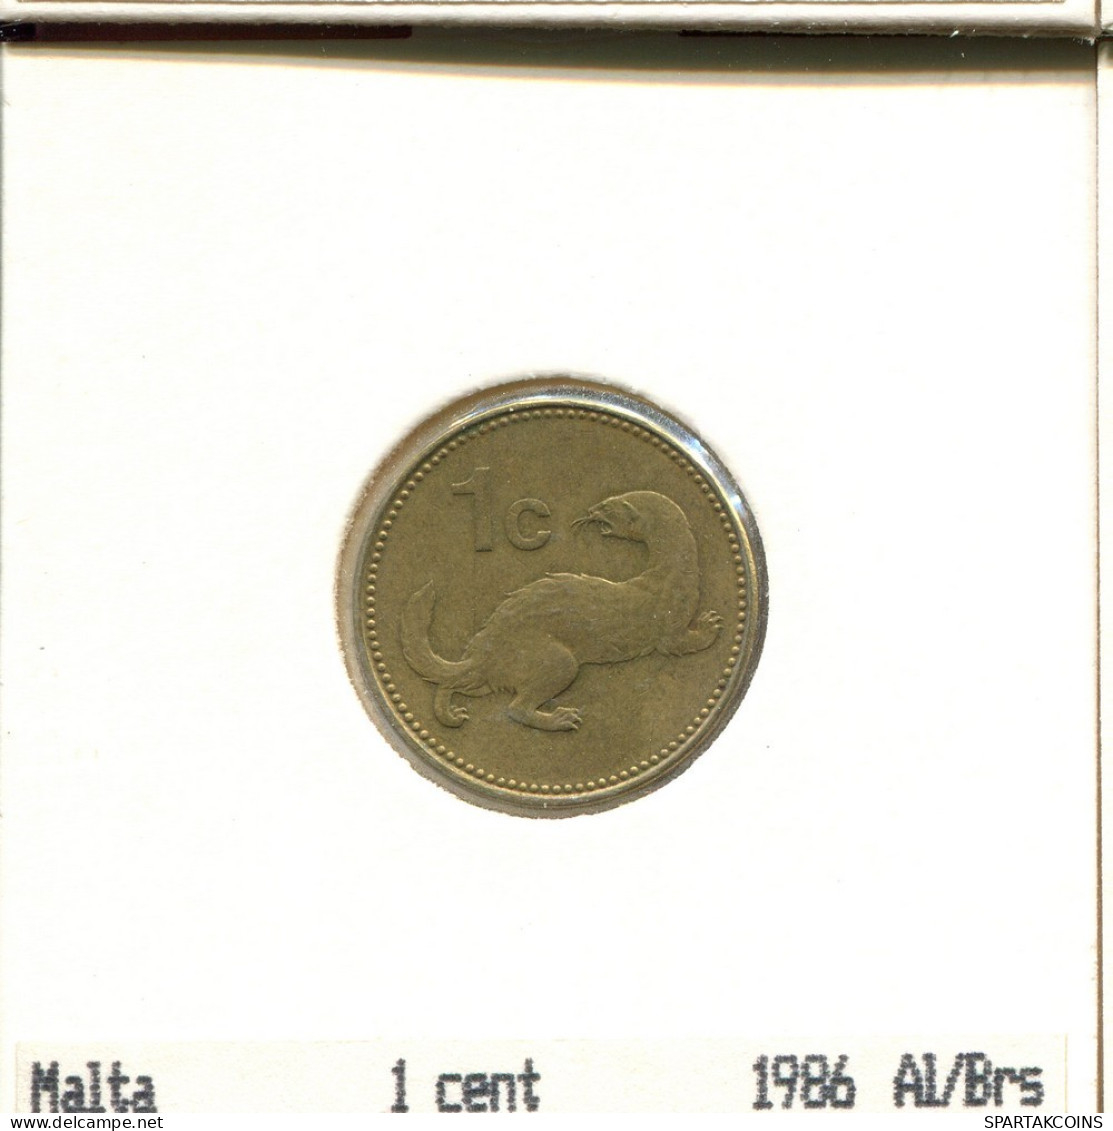 1 CENT 1986 MALTA Coin #AS634.U.A - Malte